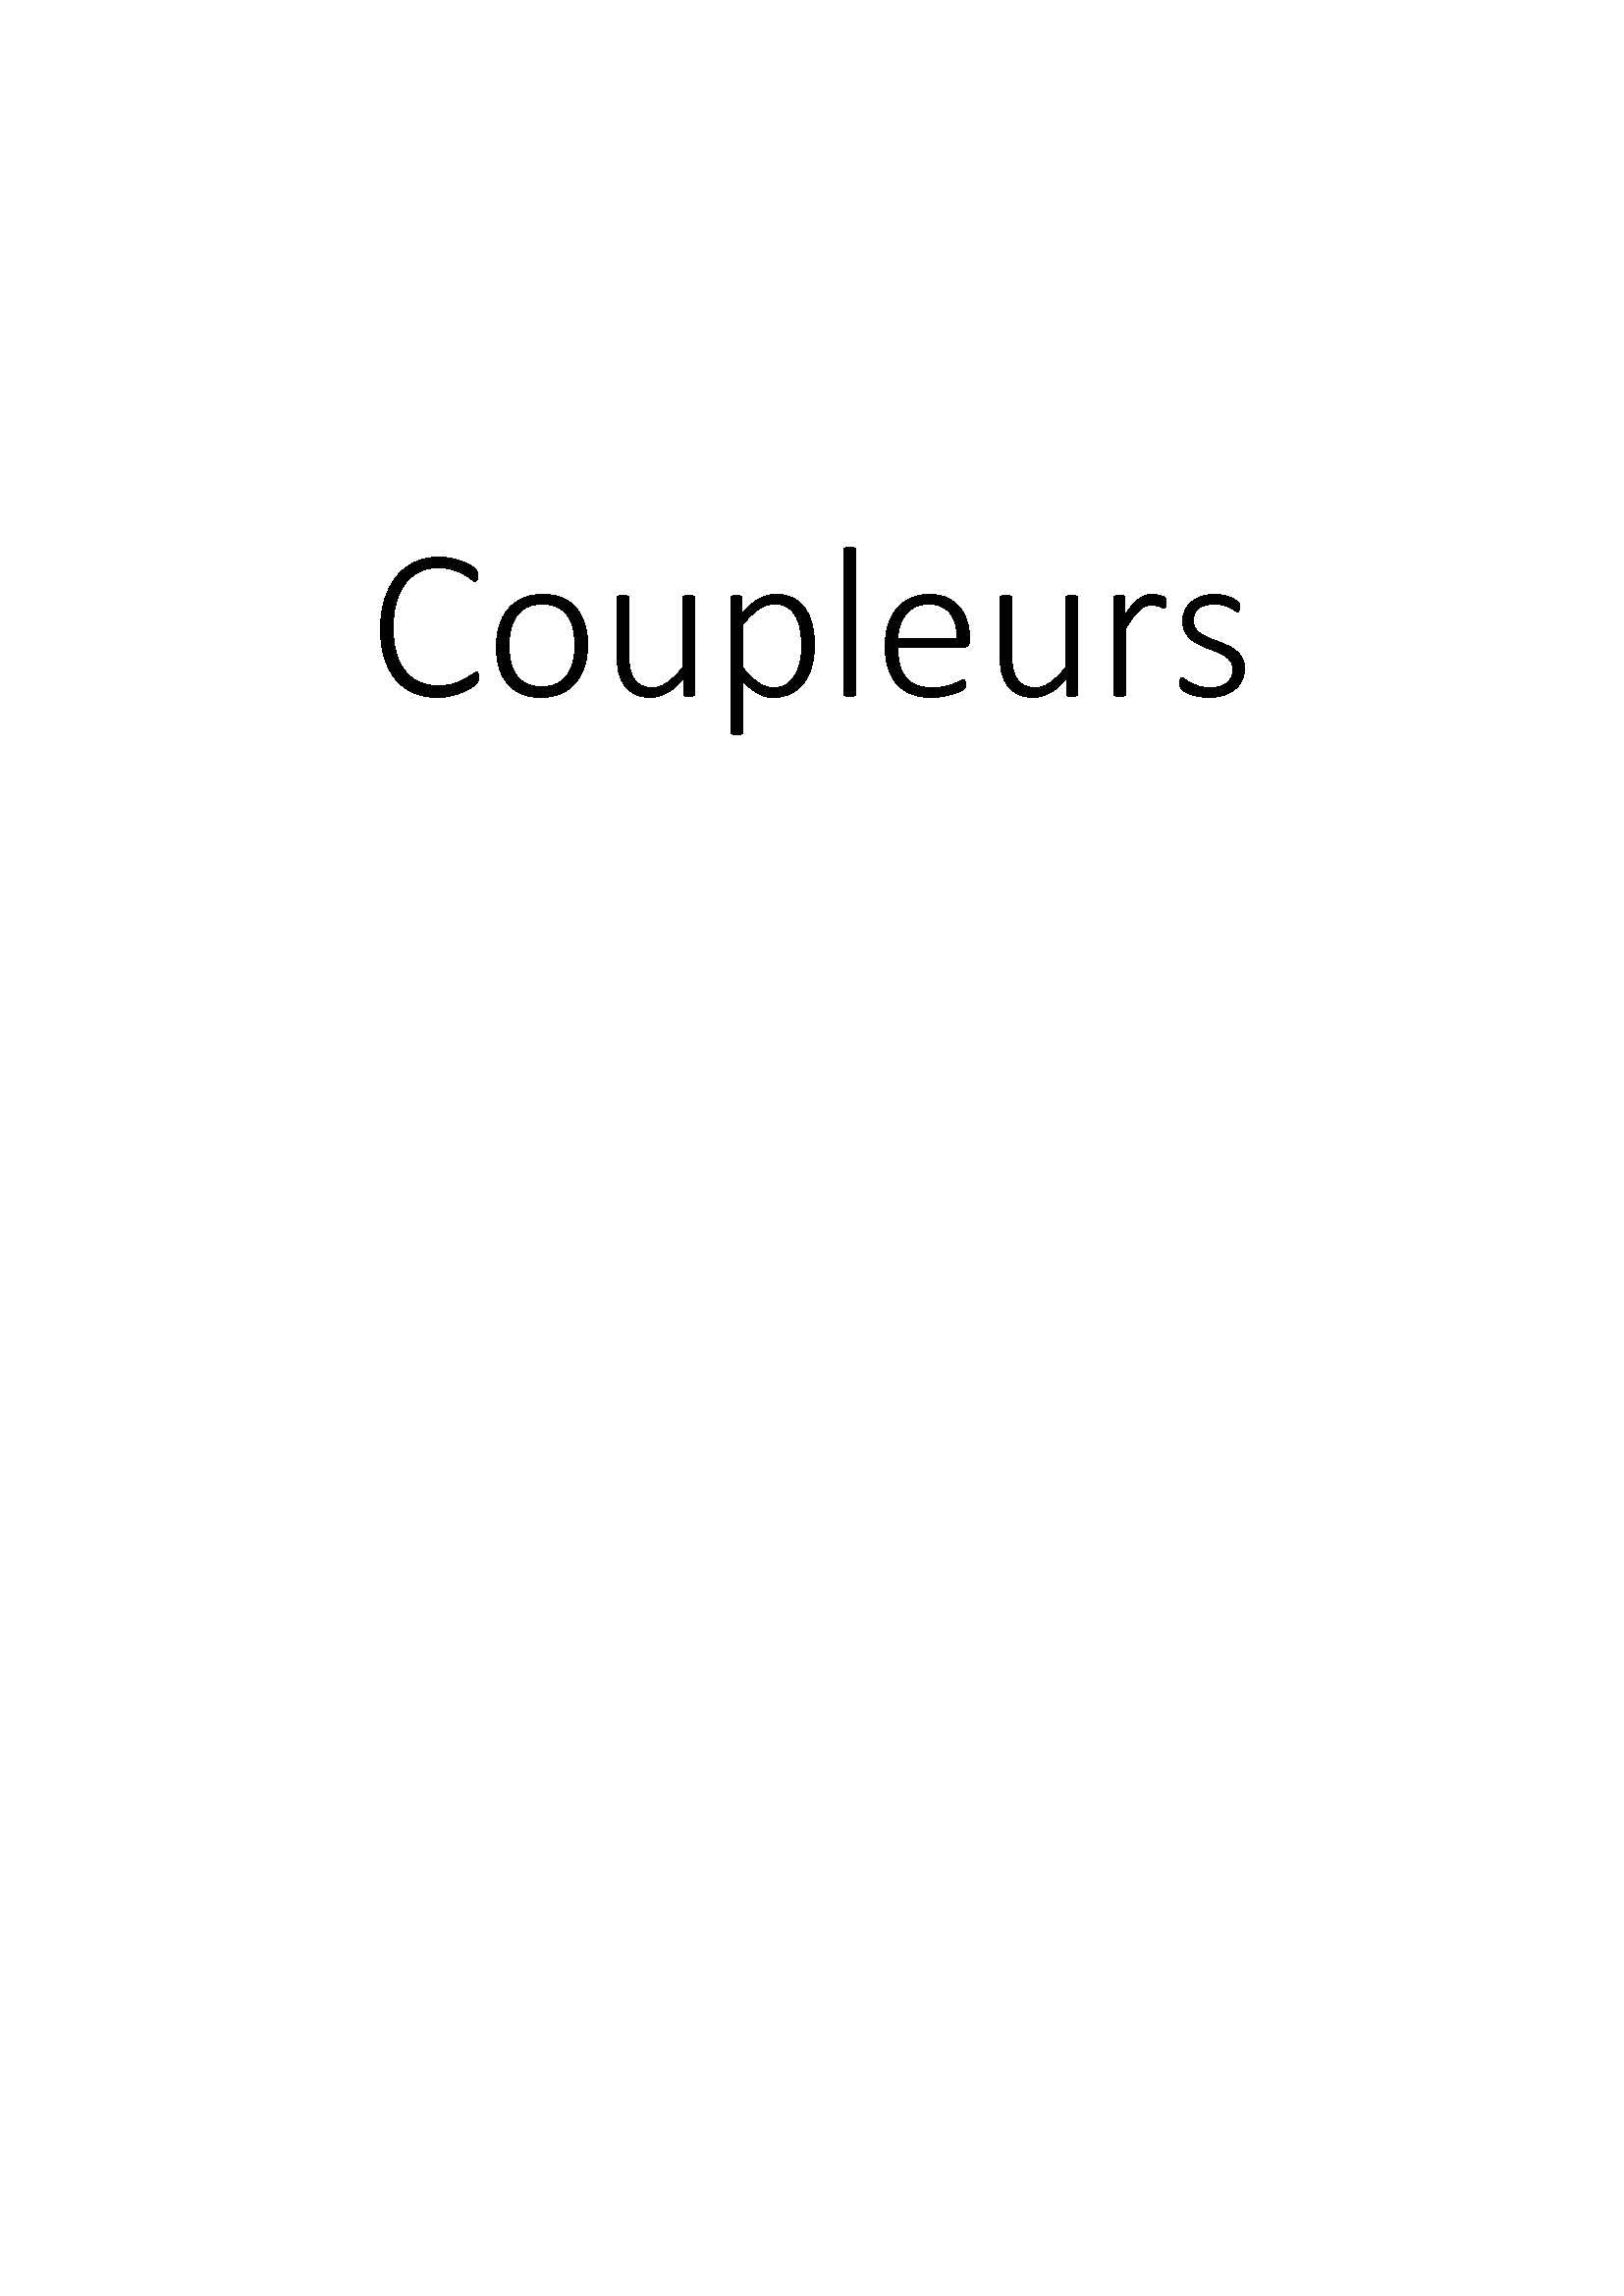 Coupleurs clicktofournisseur.com